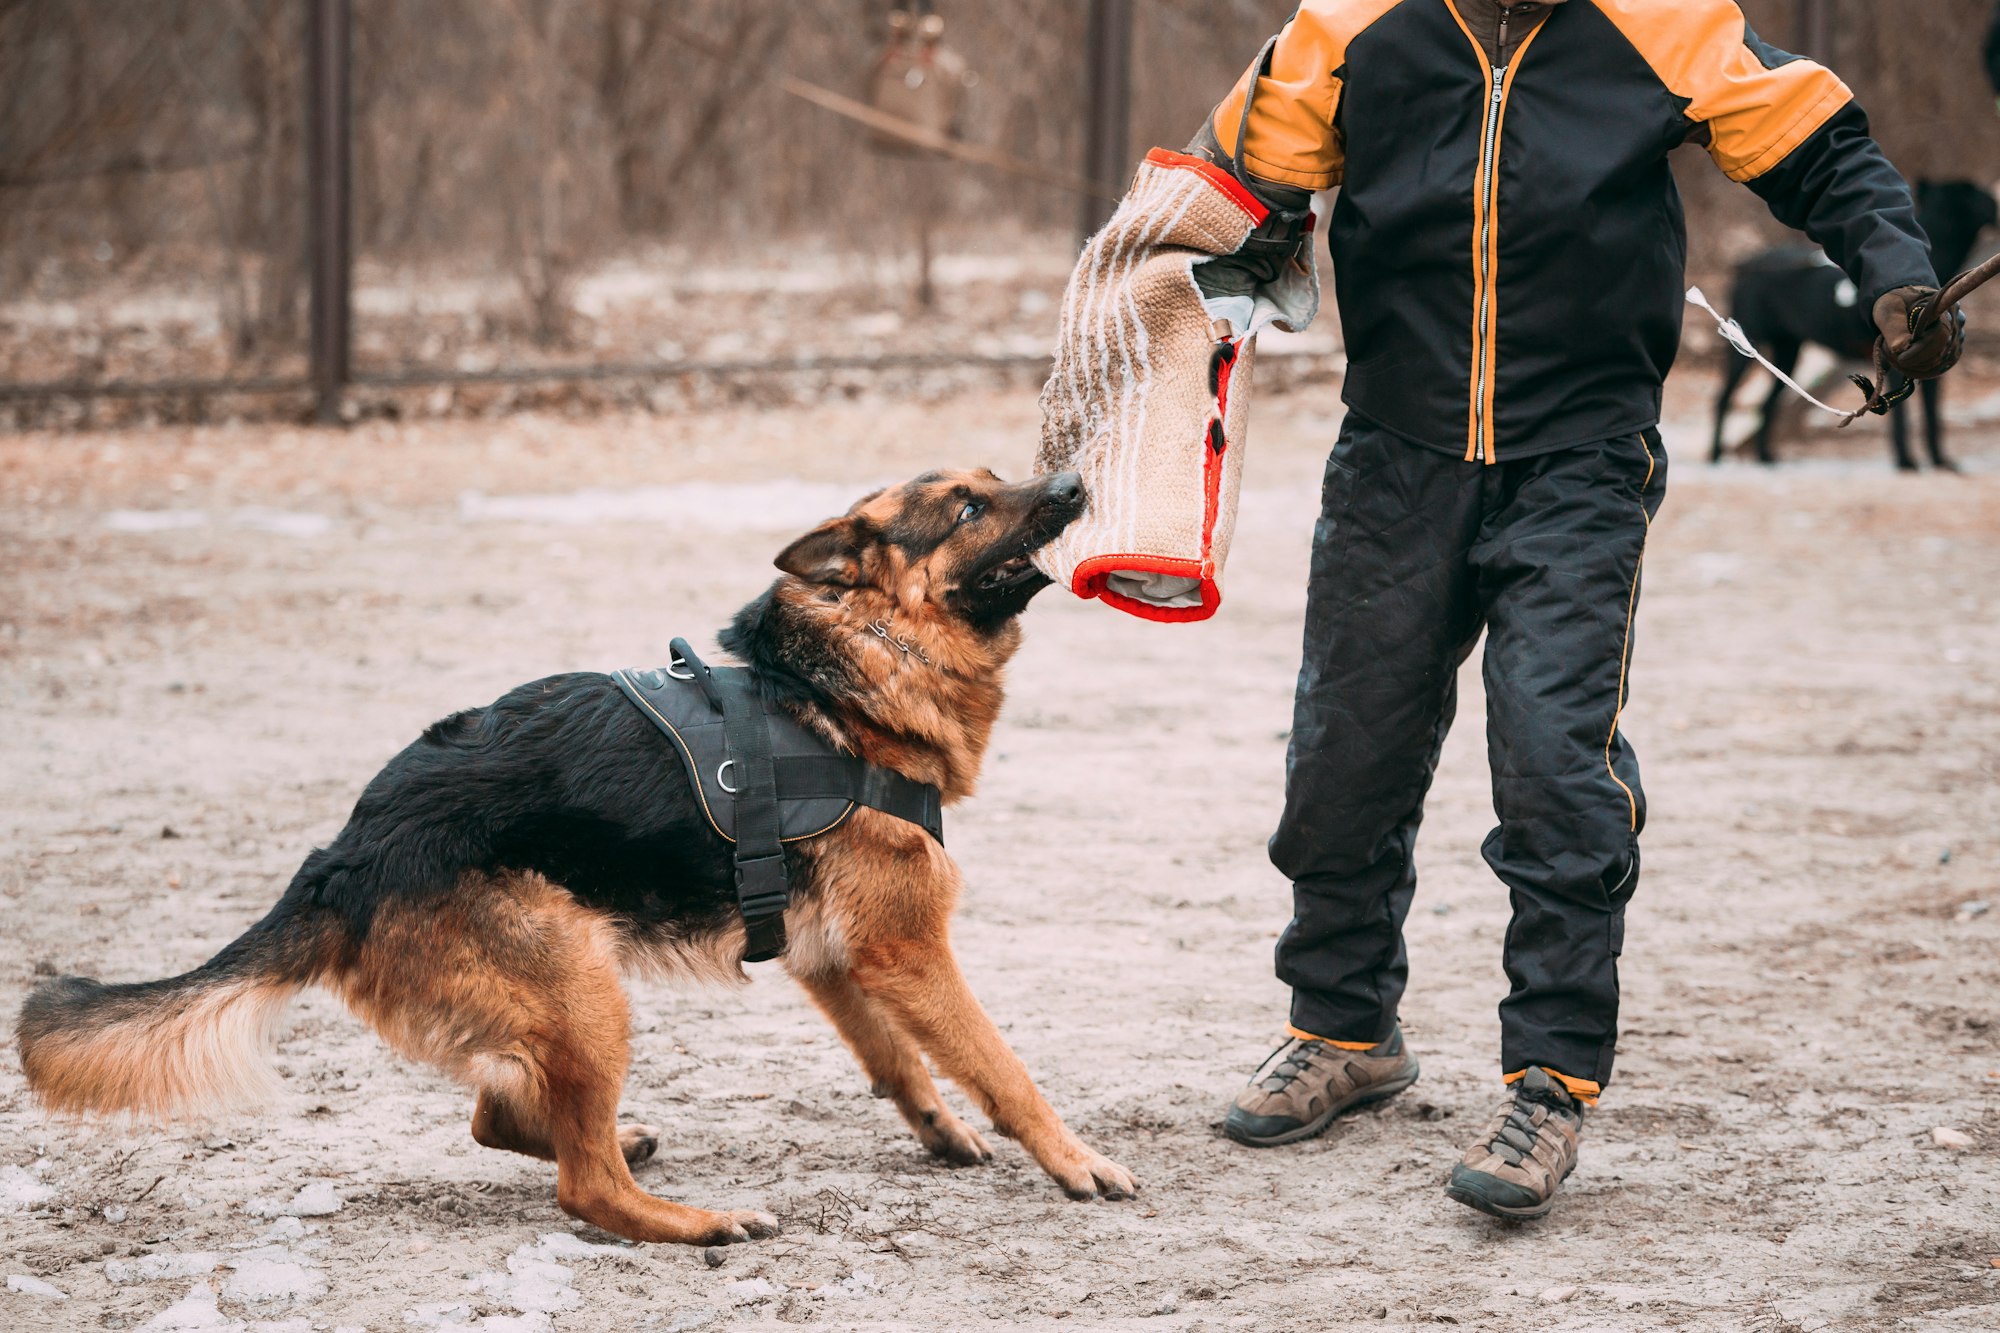 German Shepherd Dog training. Biting dog